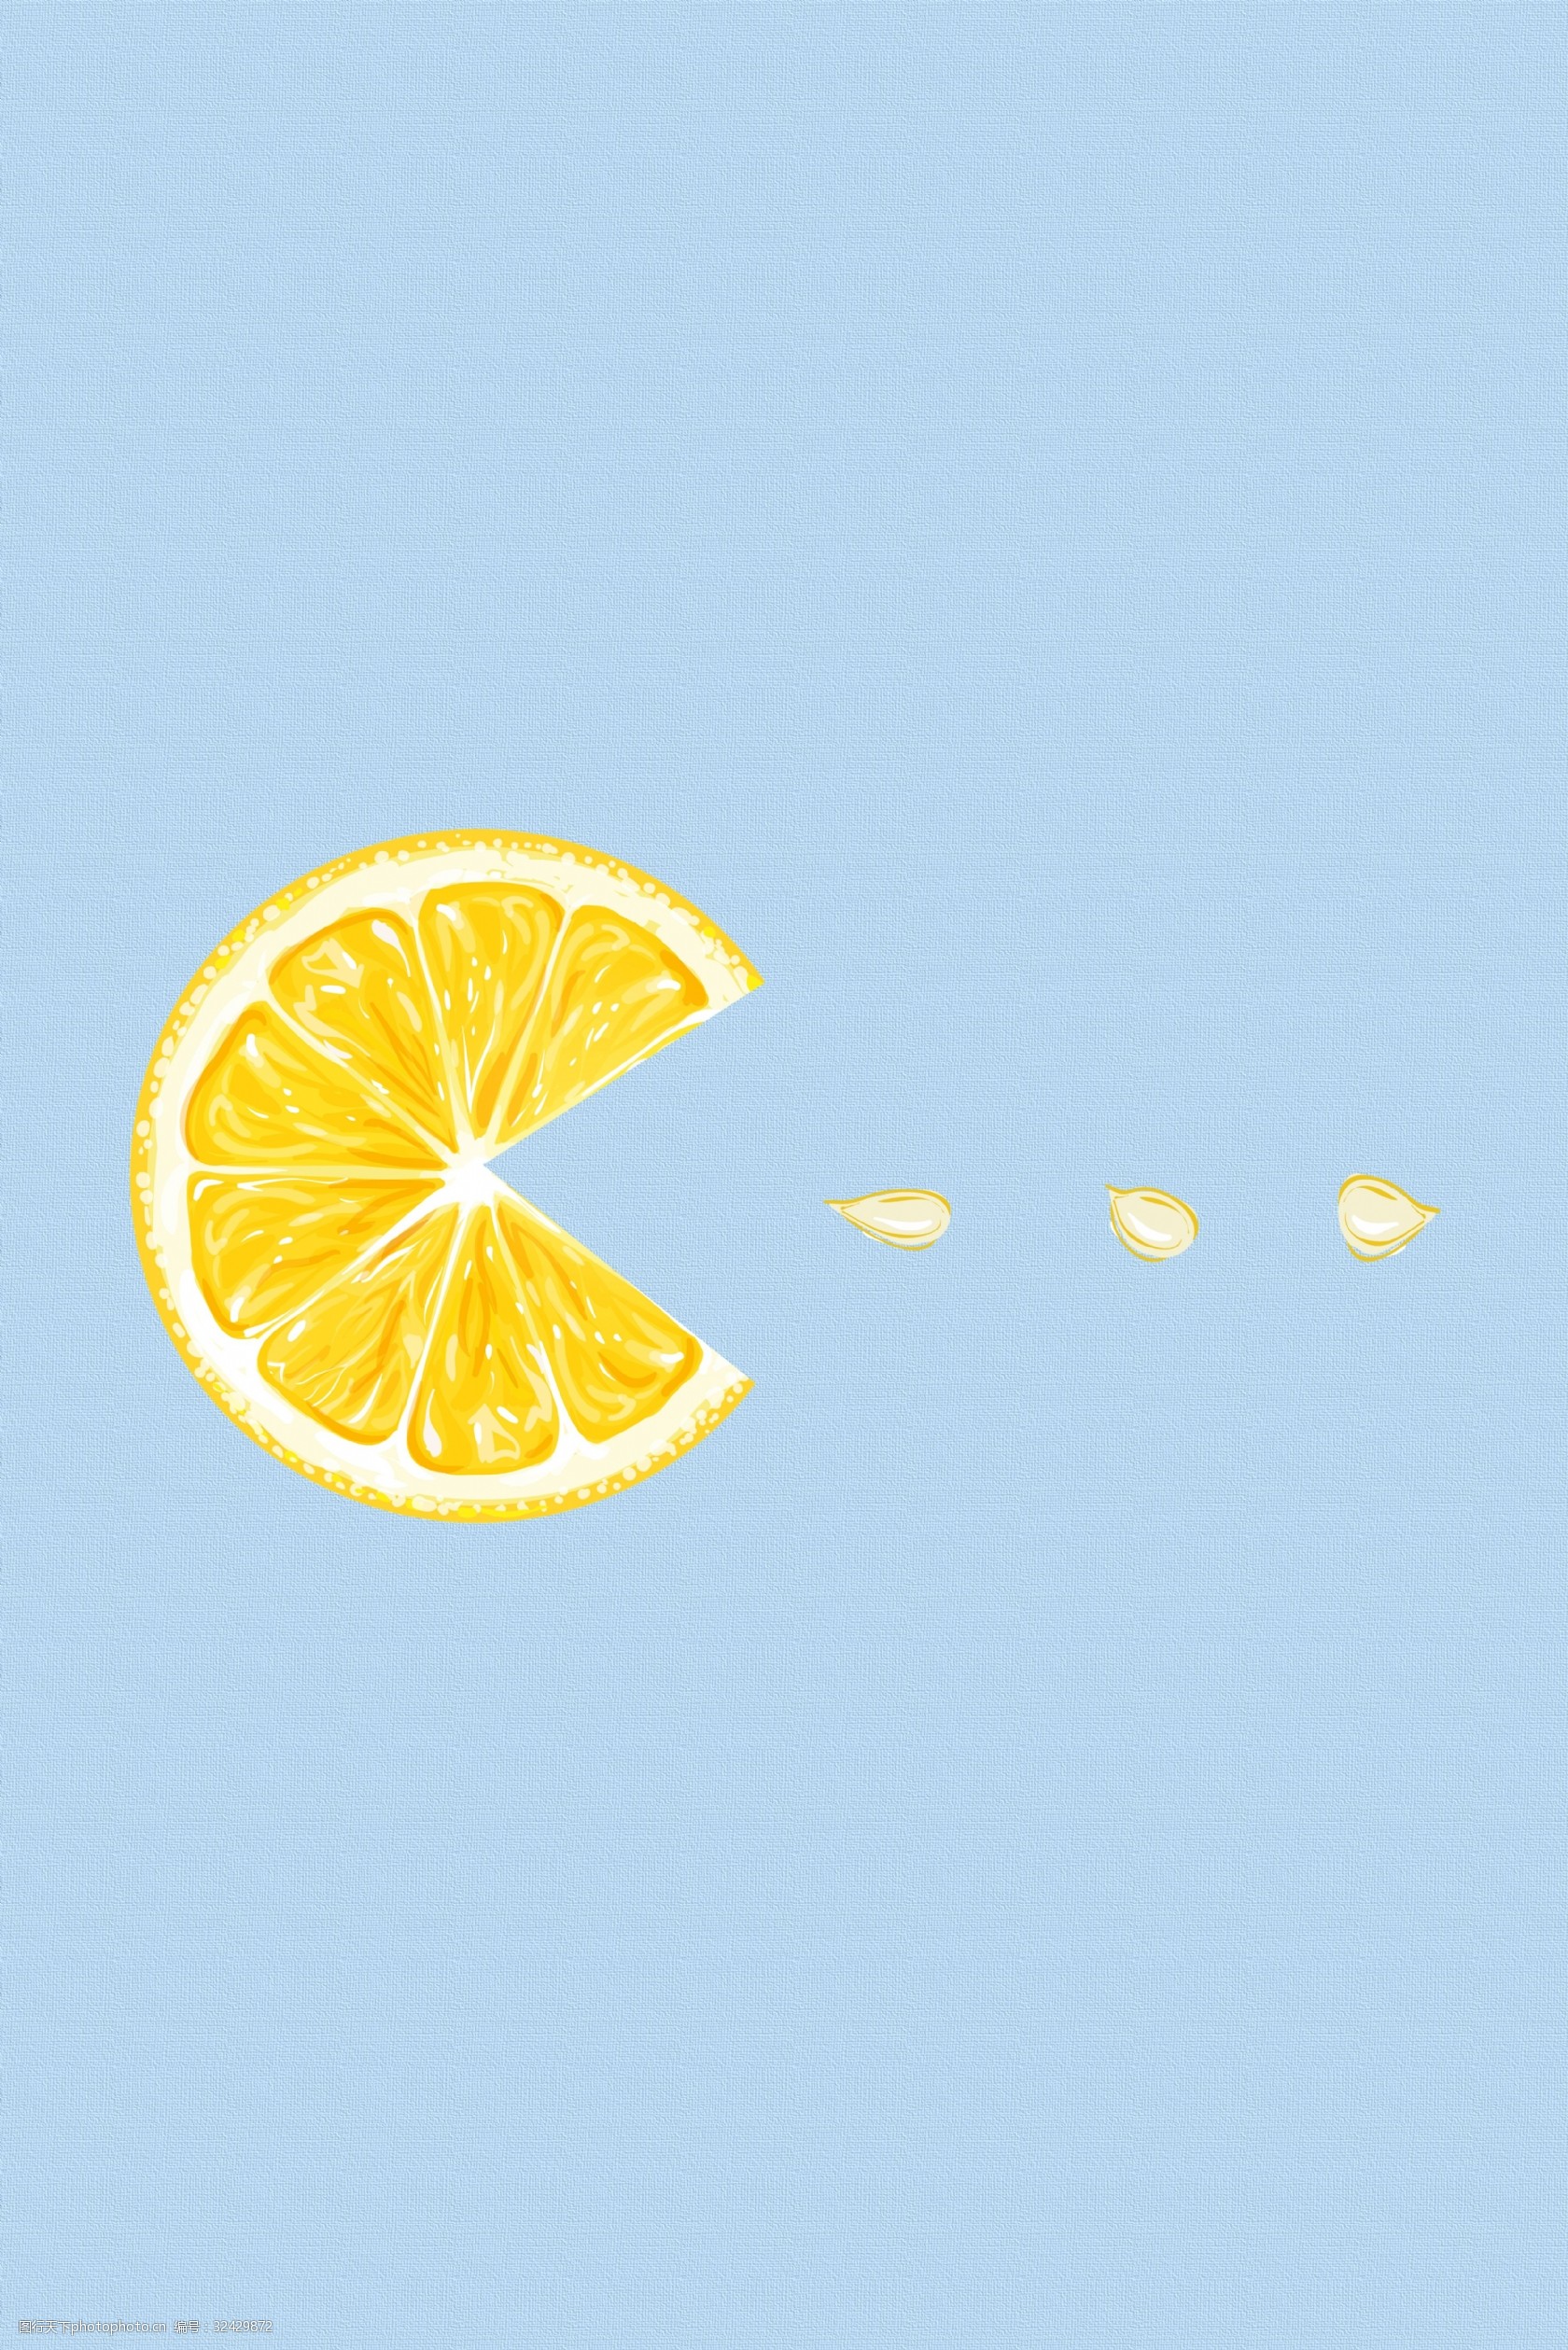 柠檬 蓝色 手绘 简约 底纹 黄 小清新 海报 背景 宣传